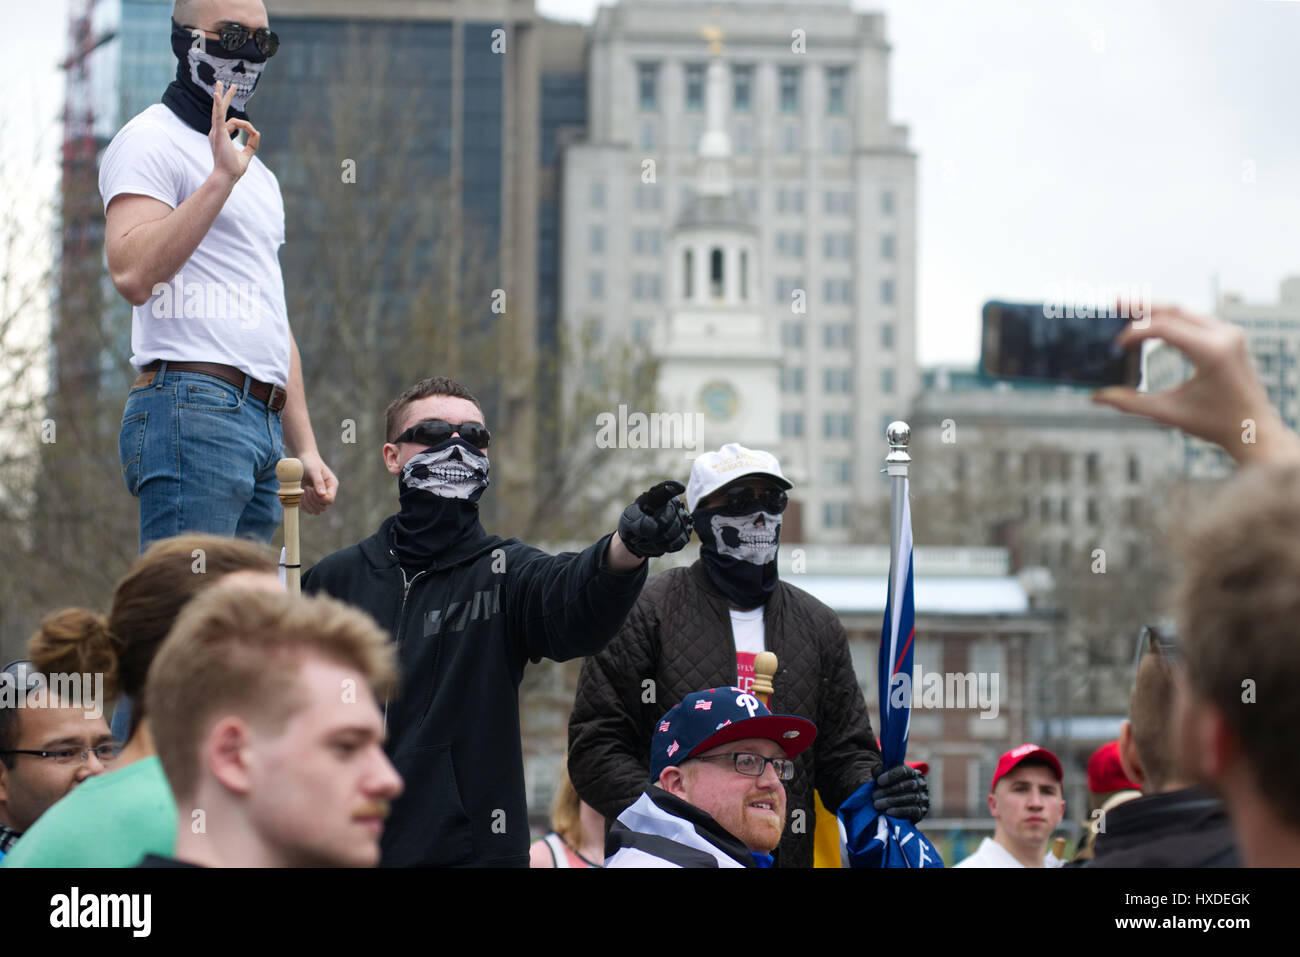 Rendere l'America grande di nuovo rally e marzo di pro-trump sostenitori è tagliato corto da un gruppo di opposte Antifa Anti-Trump manifestanti in Philadelphia, PA, Foto Stock